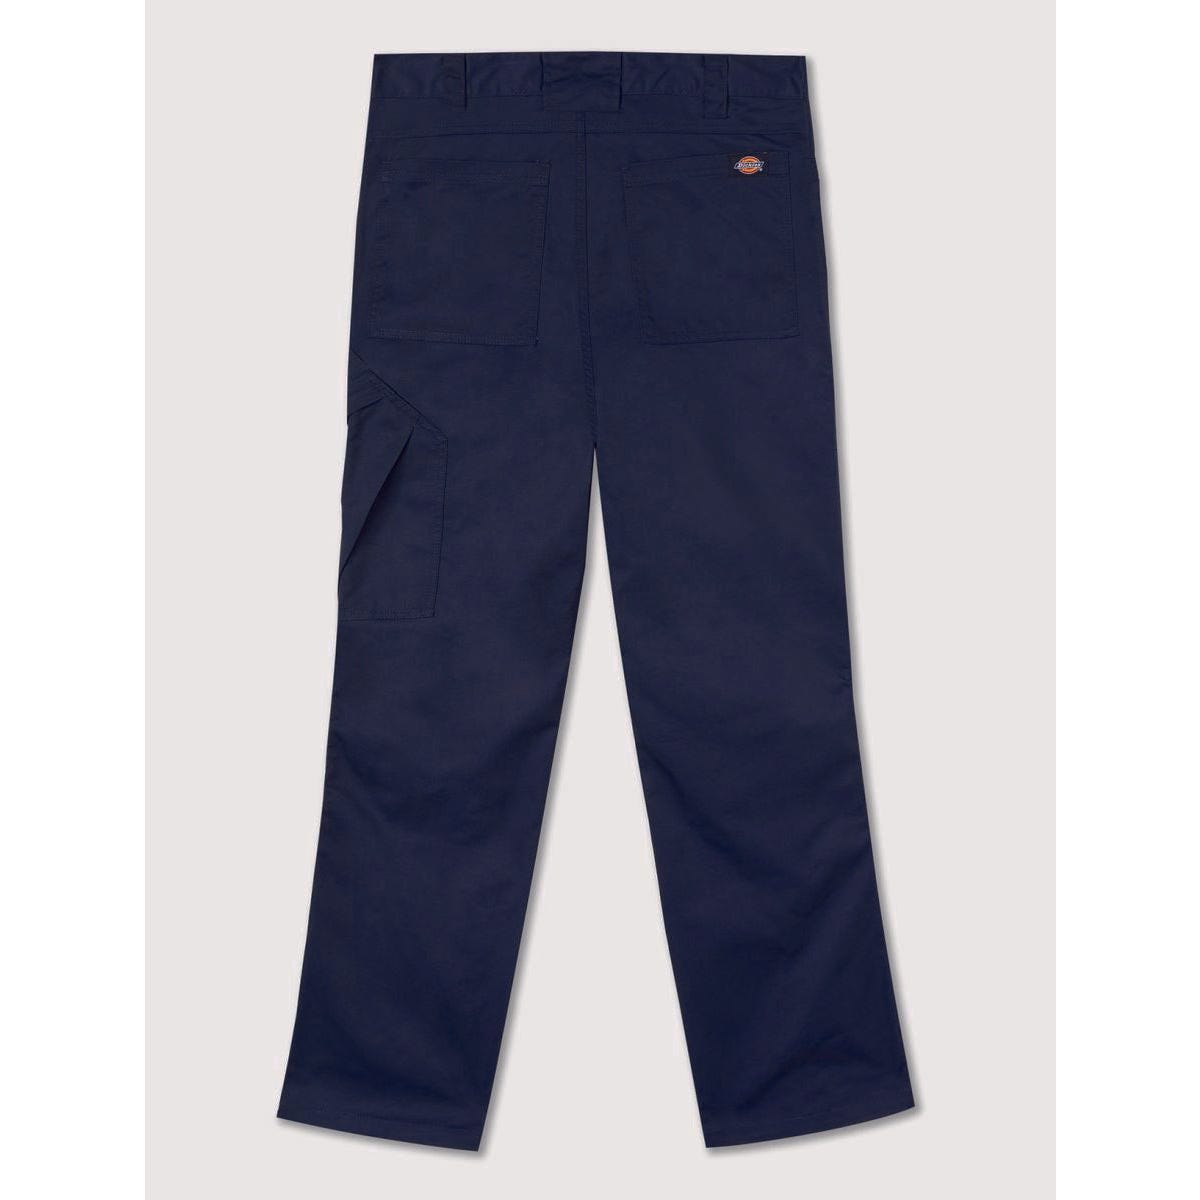 Pantalon de travail Action Flex gris - Dickies - Taille 46 6